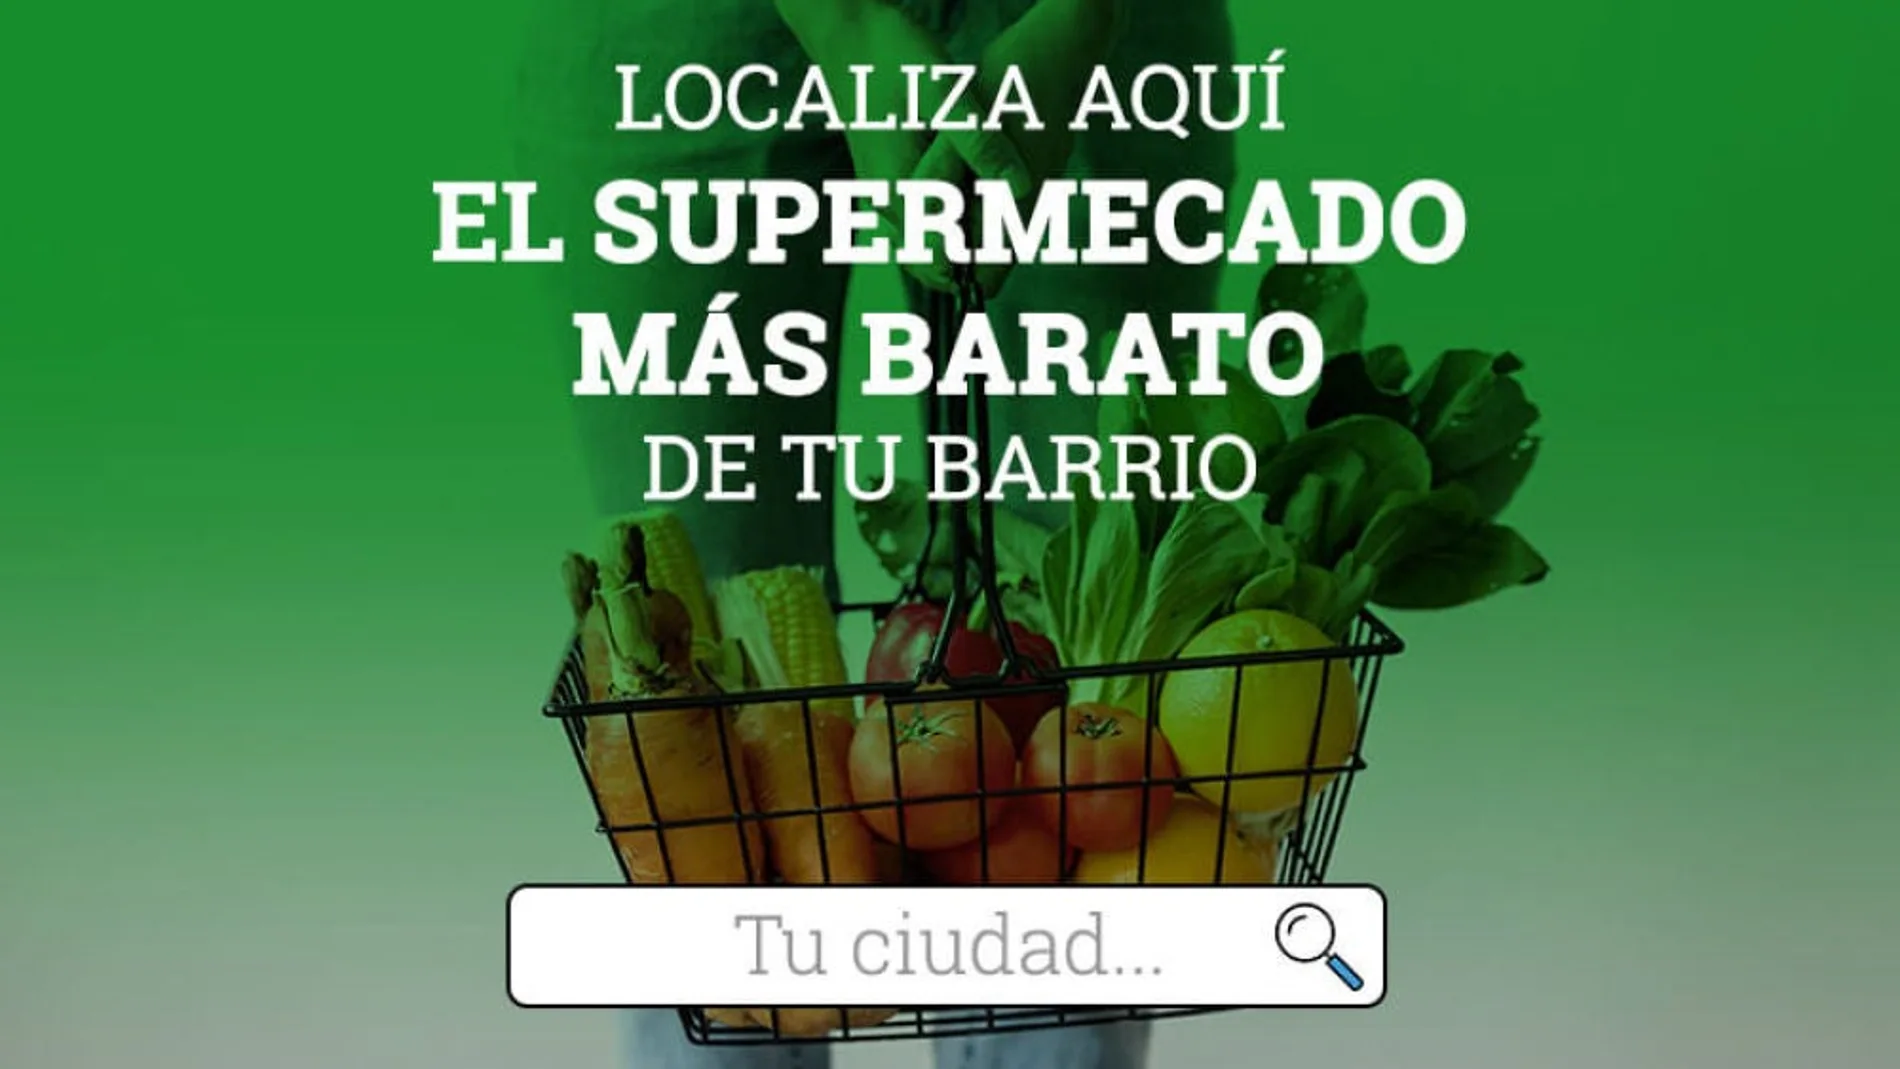 Buscador interactivo: ¿Cuál es el supermercado más barato de tu localidad?